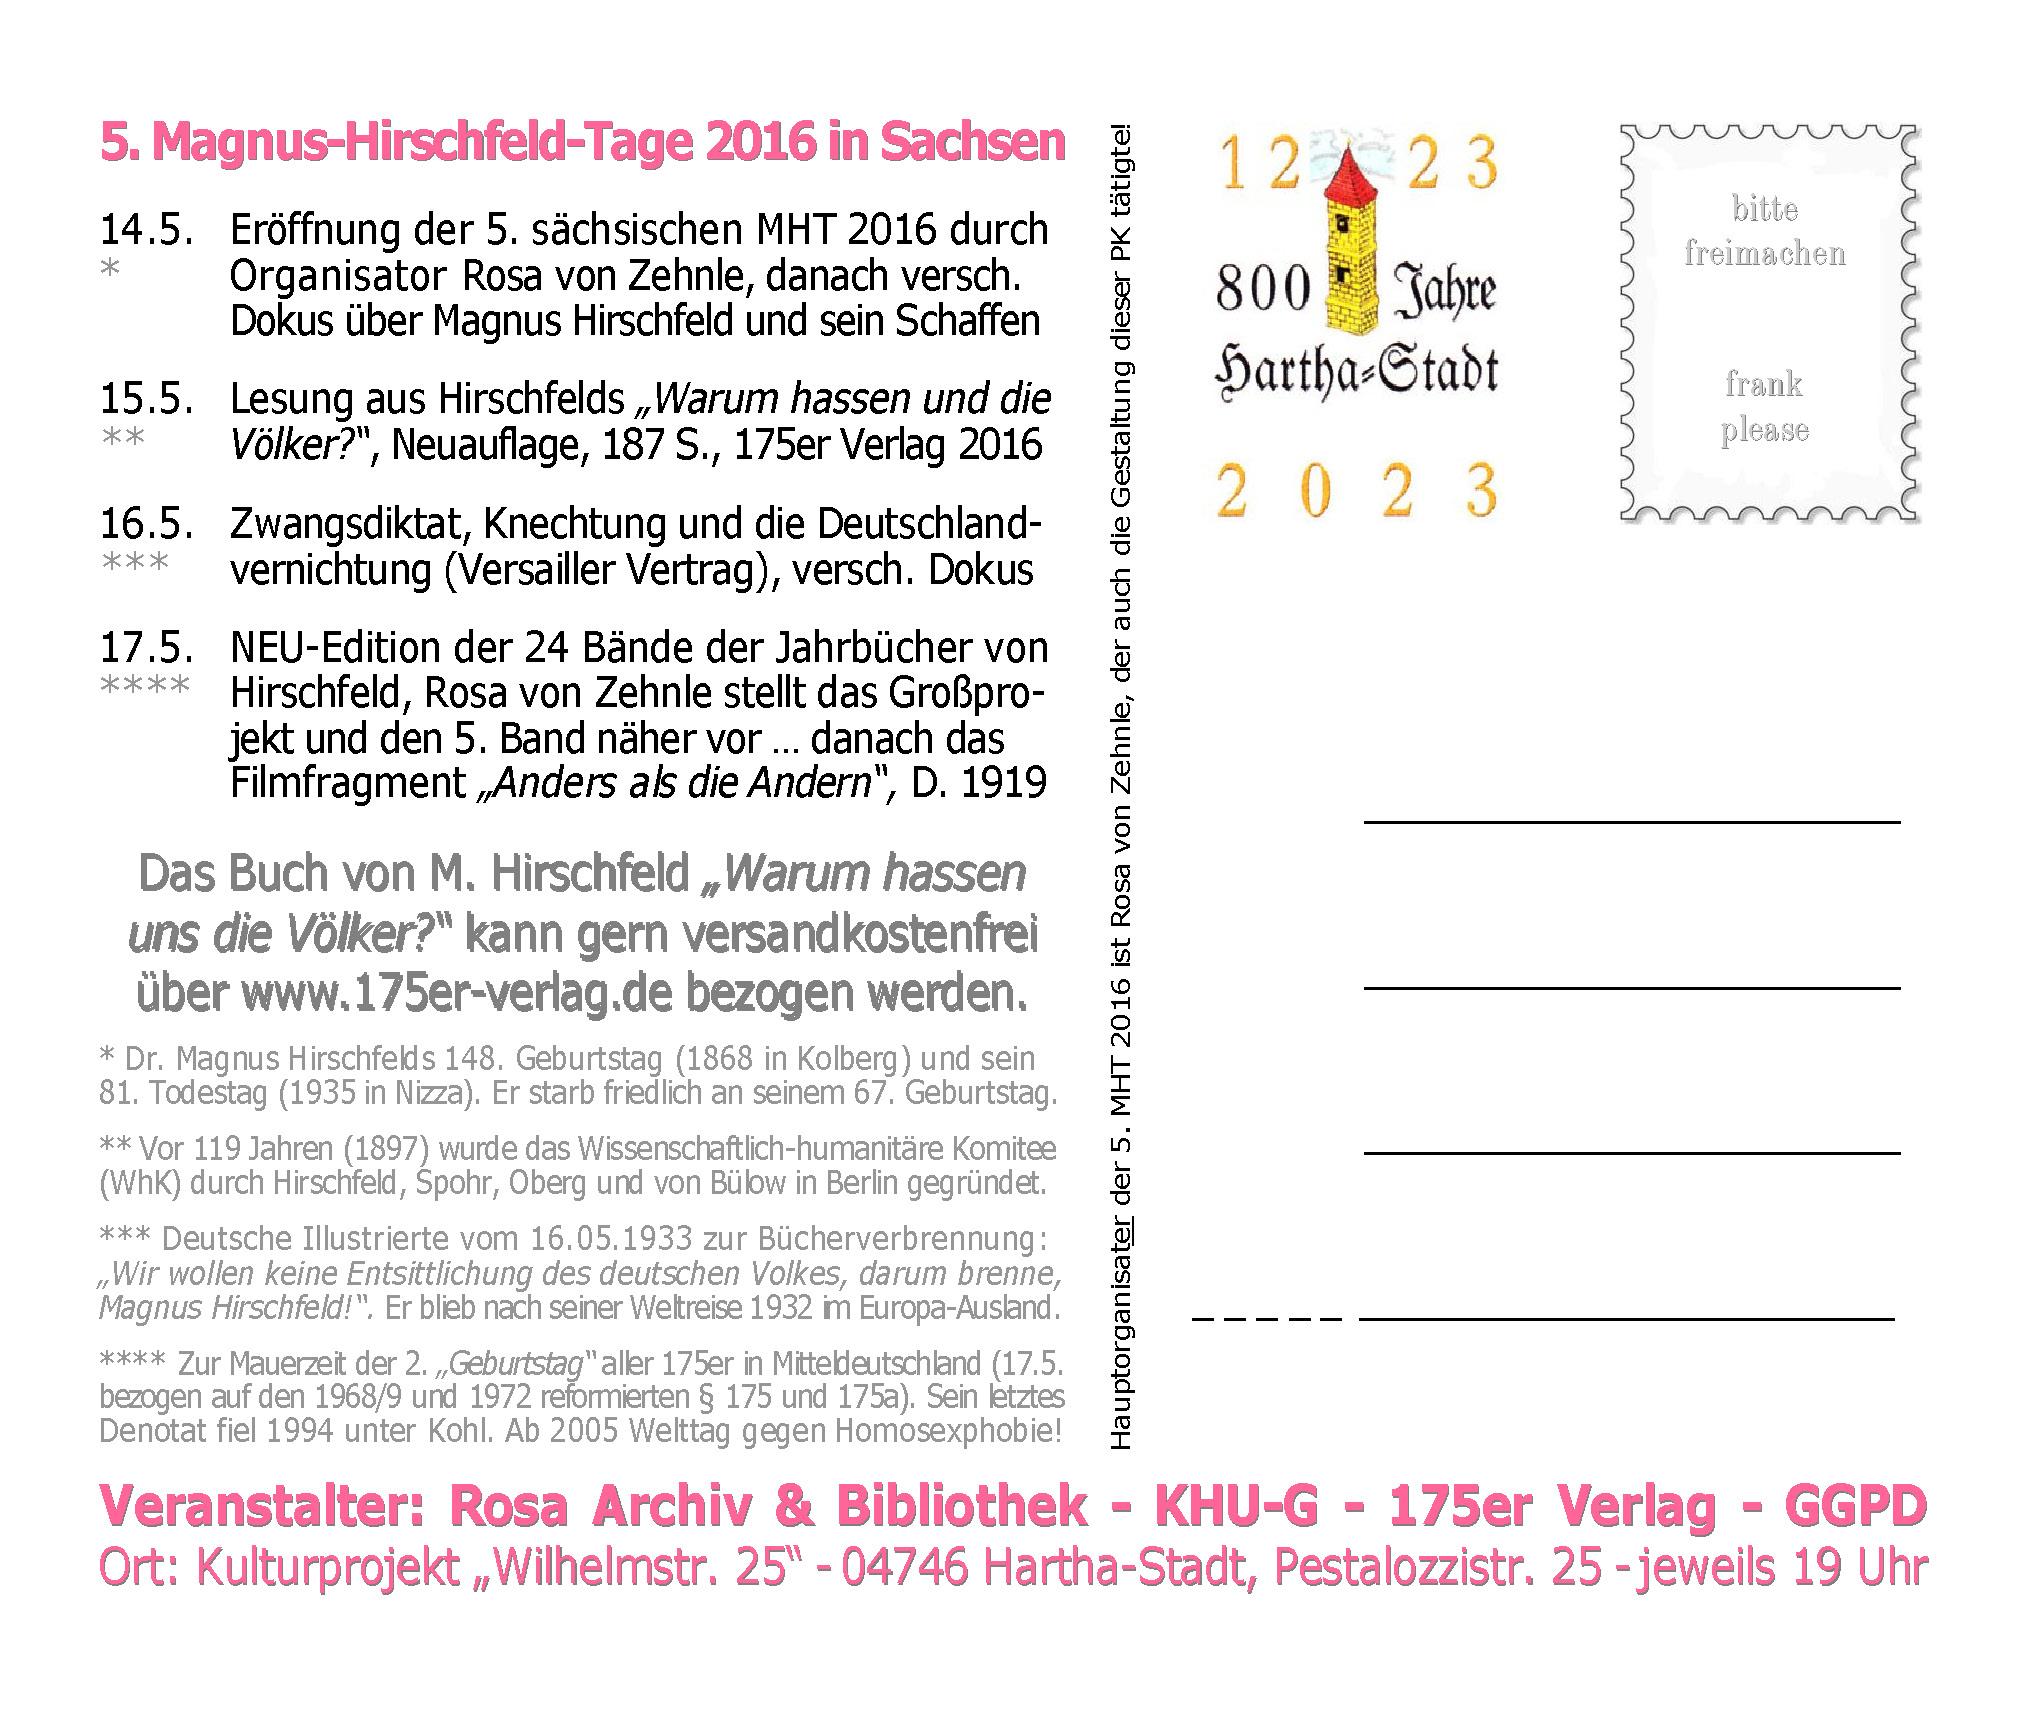 Postkarte Rückseite zu de 5. Magnus-Hirschfeld-Tagen 2016 in Sachsen ...